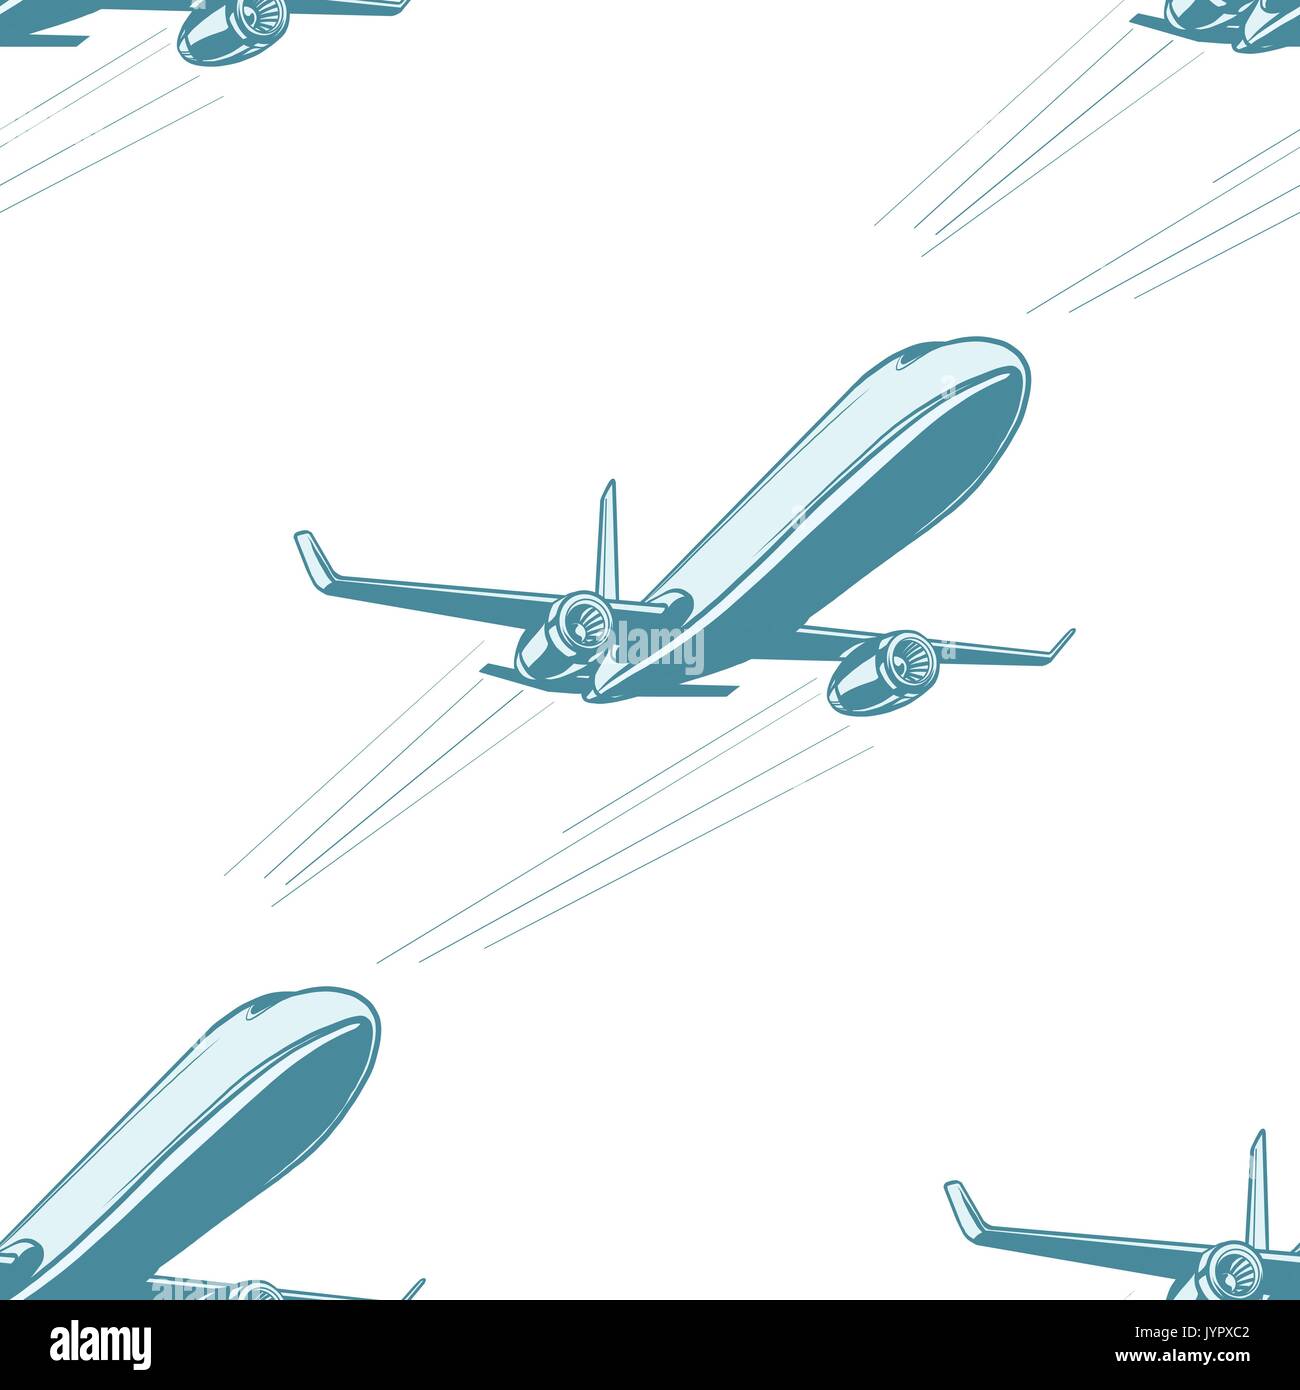 Flugzeuge Luftfahrt Flugzeug Luftverkehr nahtlose Muster auf weißem Hintergrund. Flugzeug Luftfahrt reisen reise Tourismus Luftverkehr. Pop Art Stock Vektor